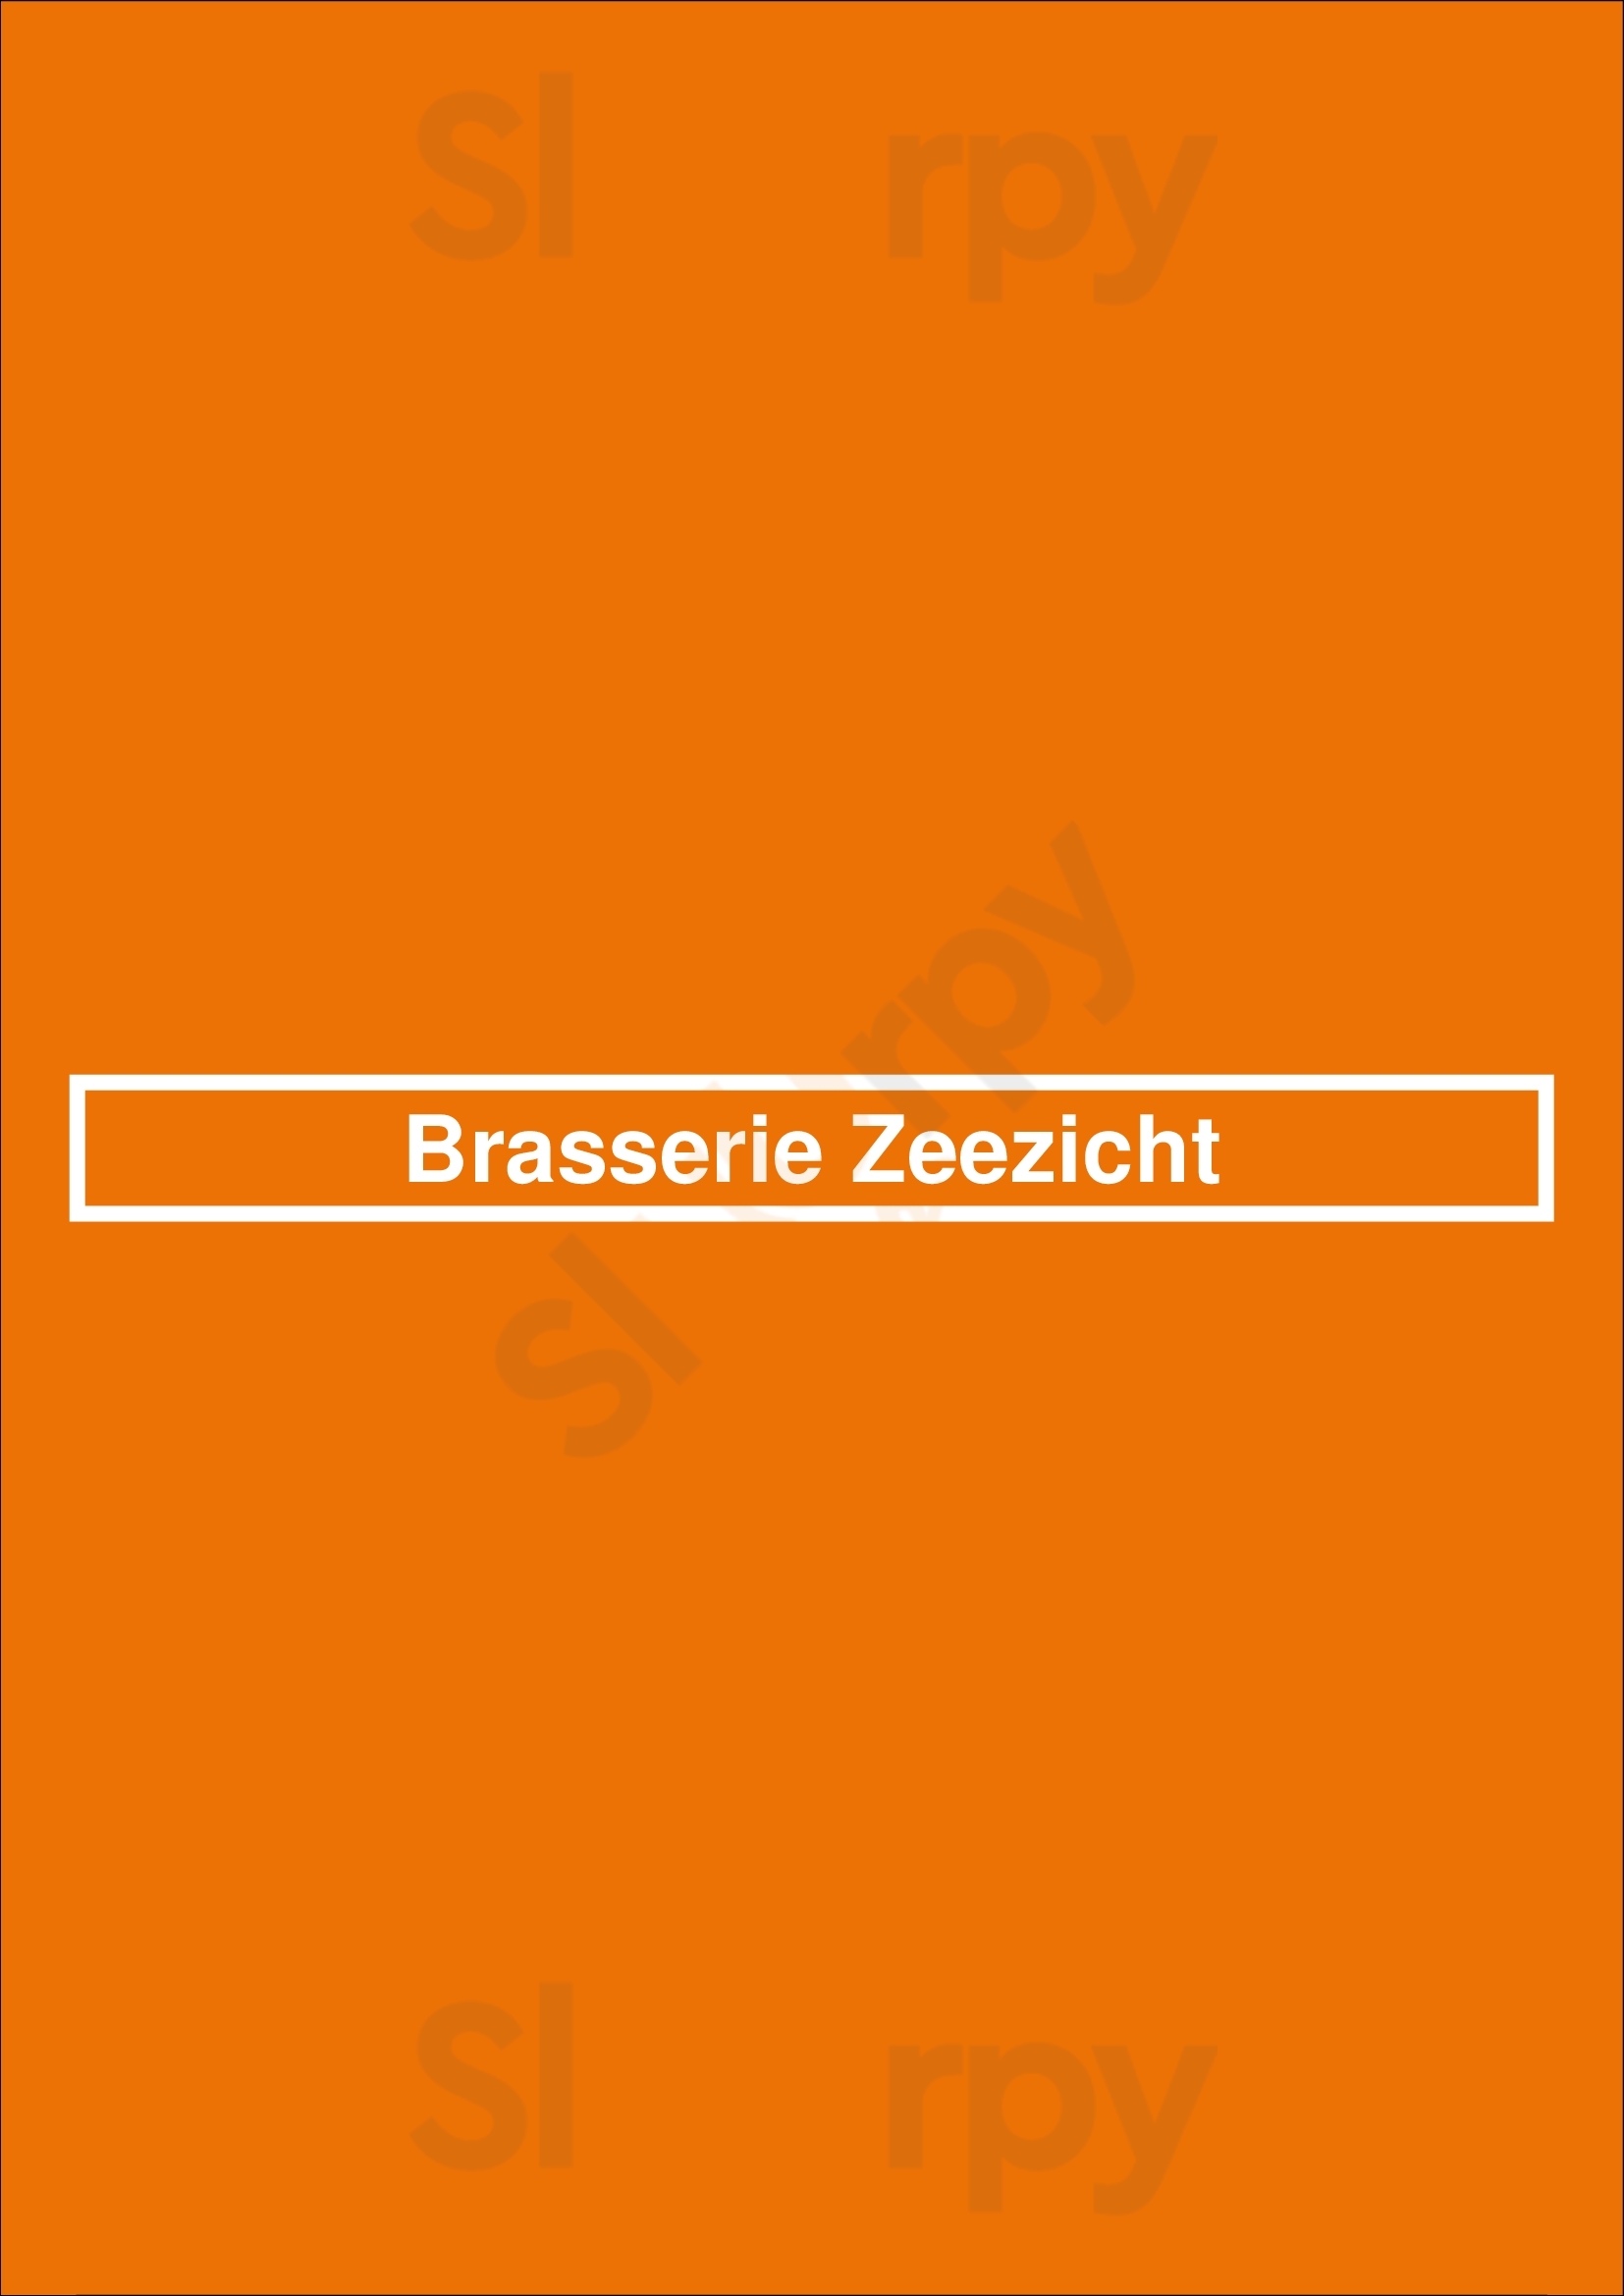 Brasserie Zeezicht Willebroek Menu - 1